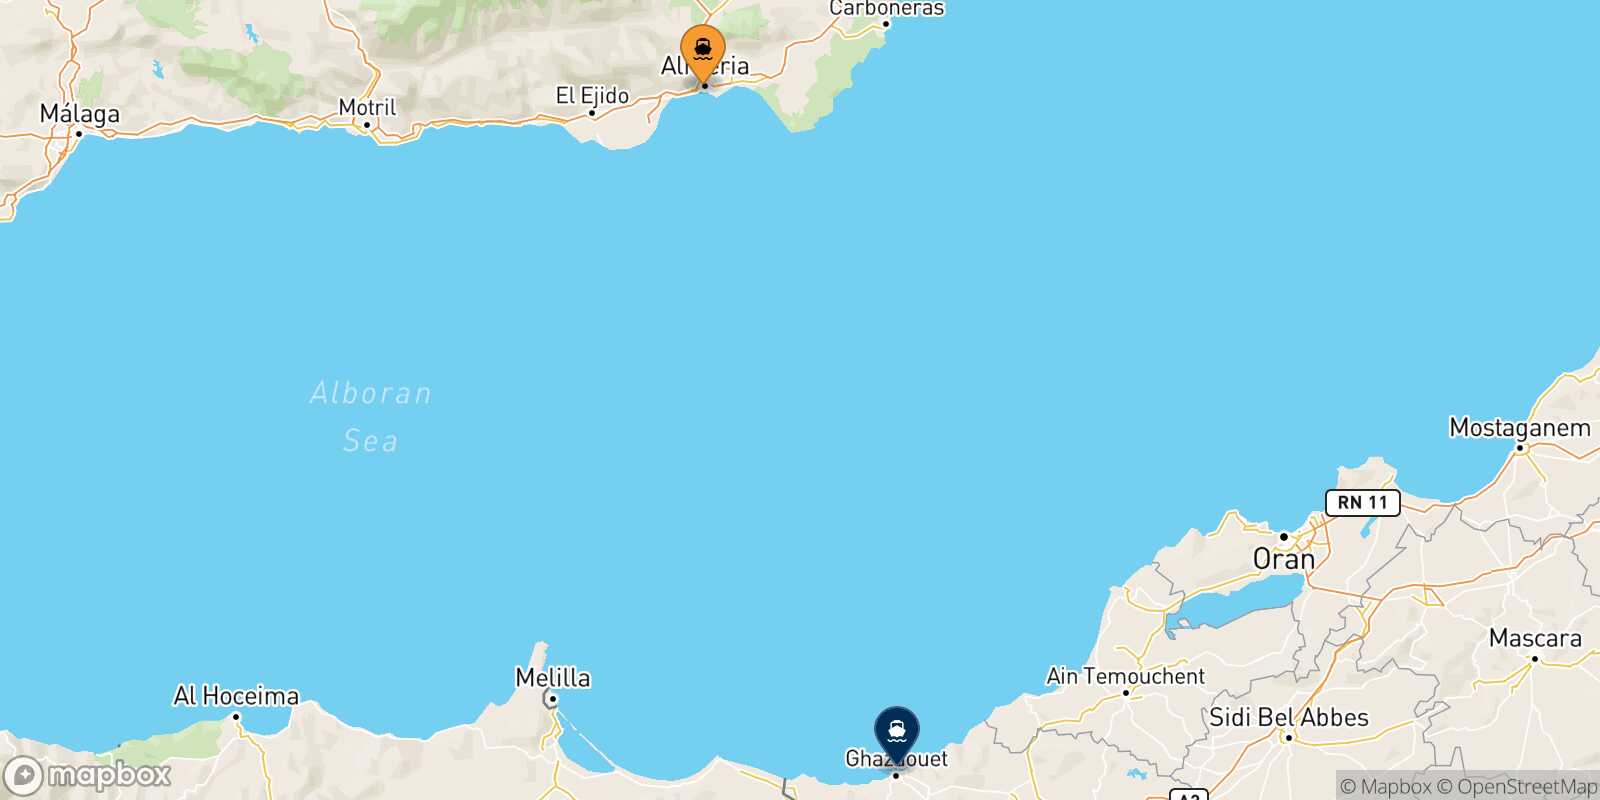 Almeria Ghazaouet route map